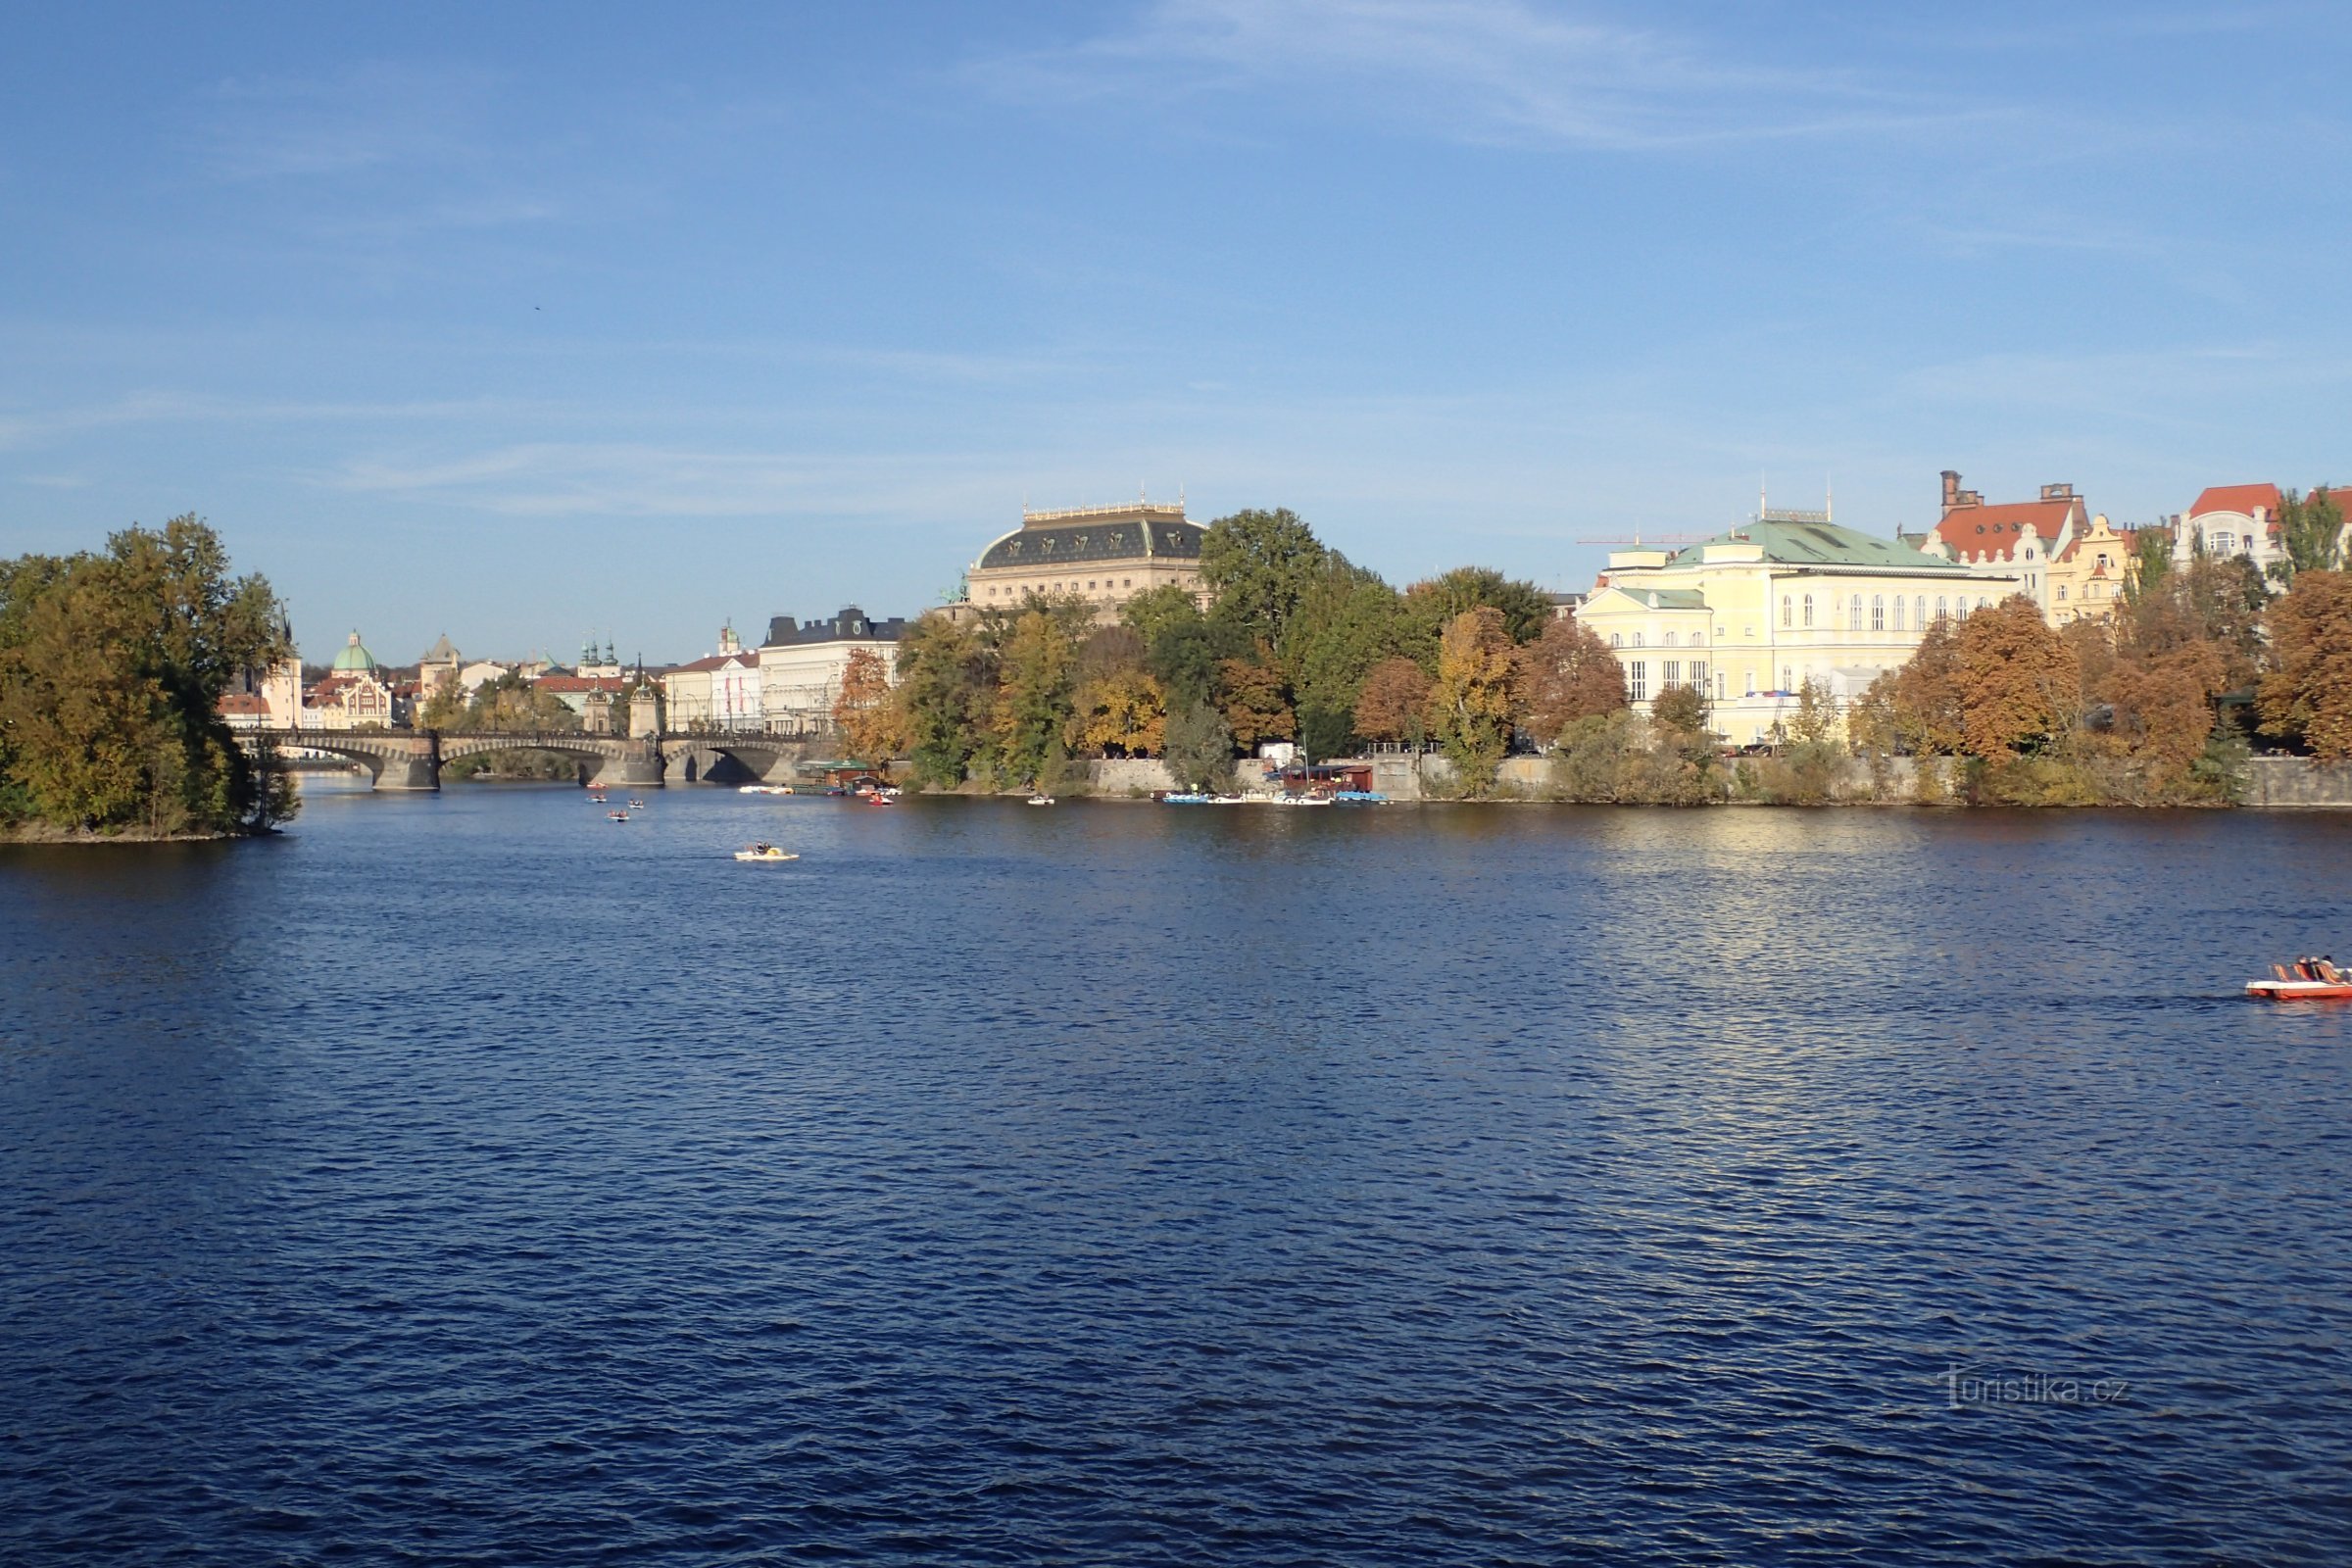 Vista do Teatro Nacional do outro lado do rio Vltava.